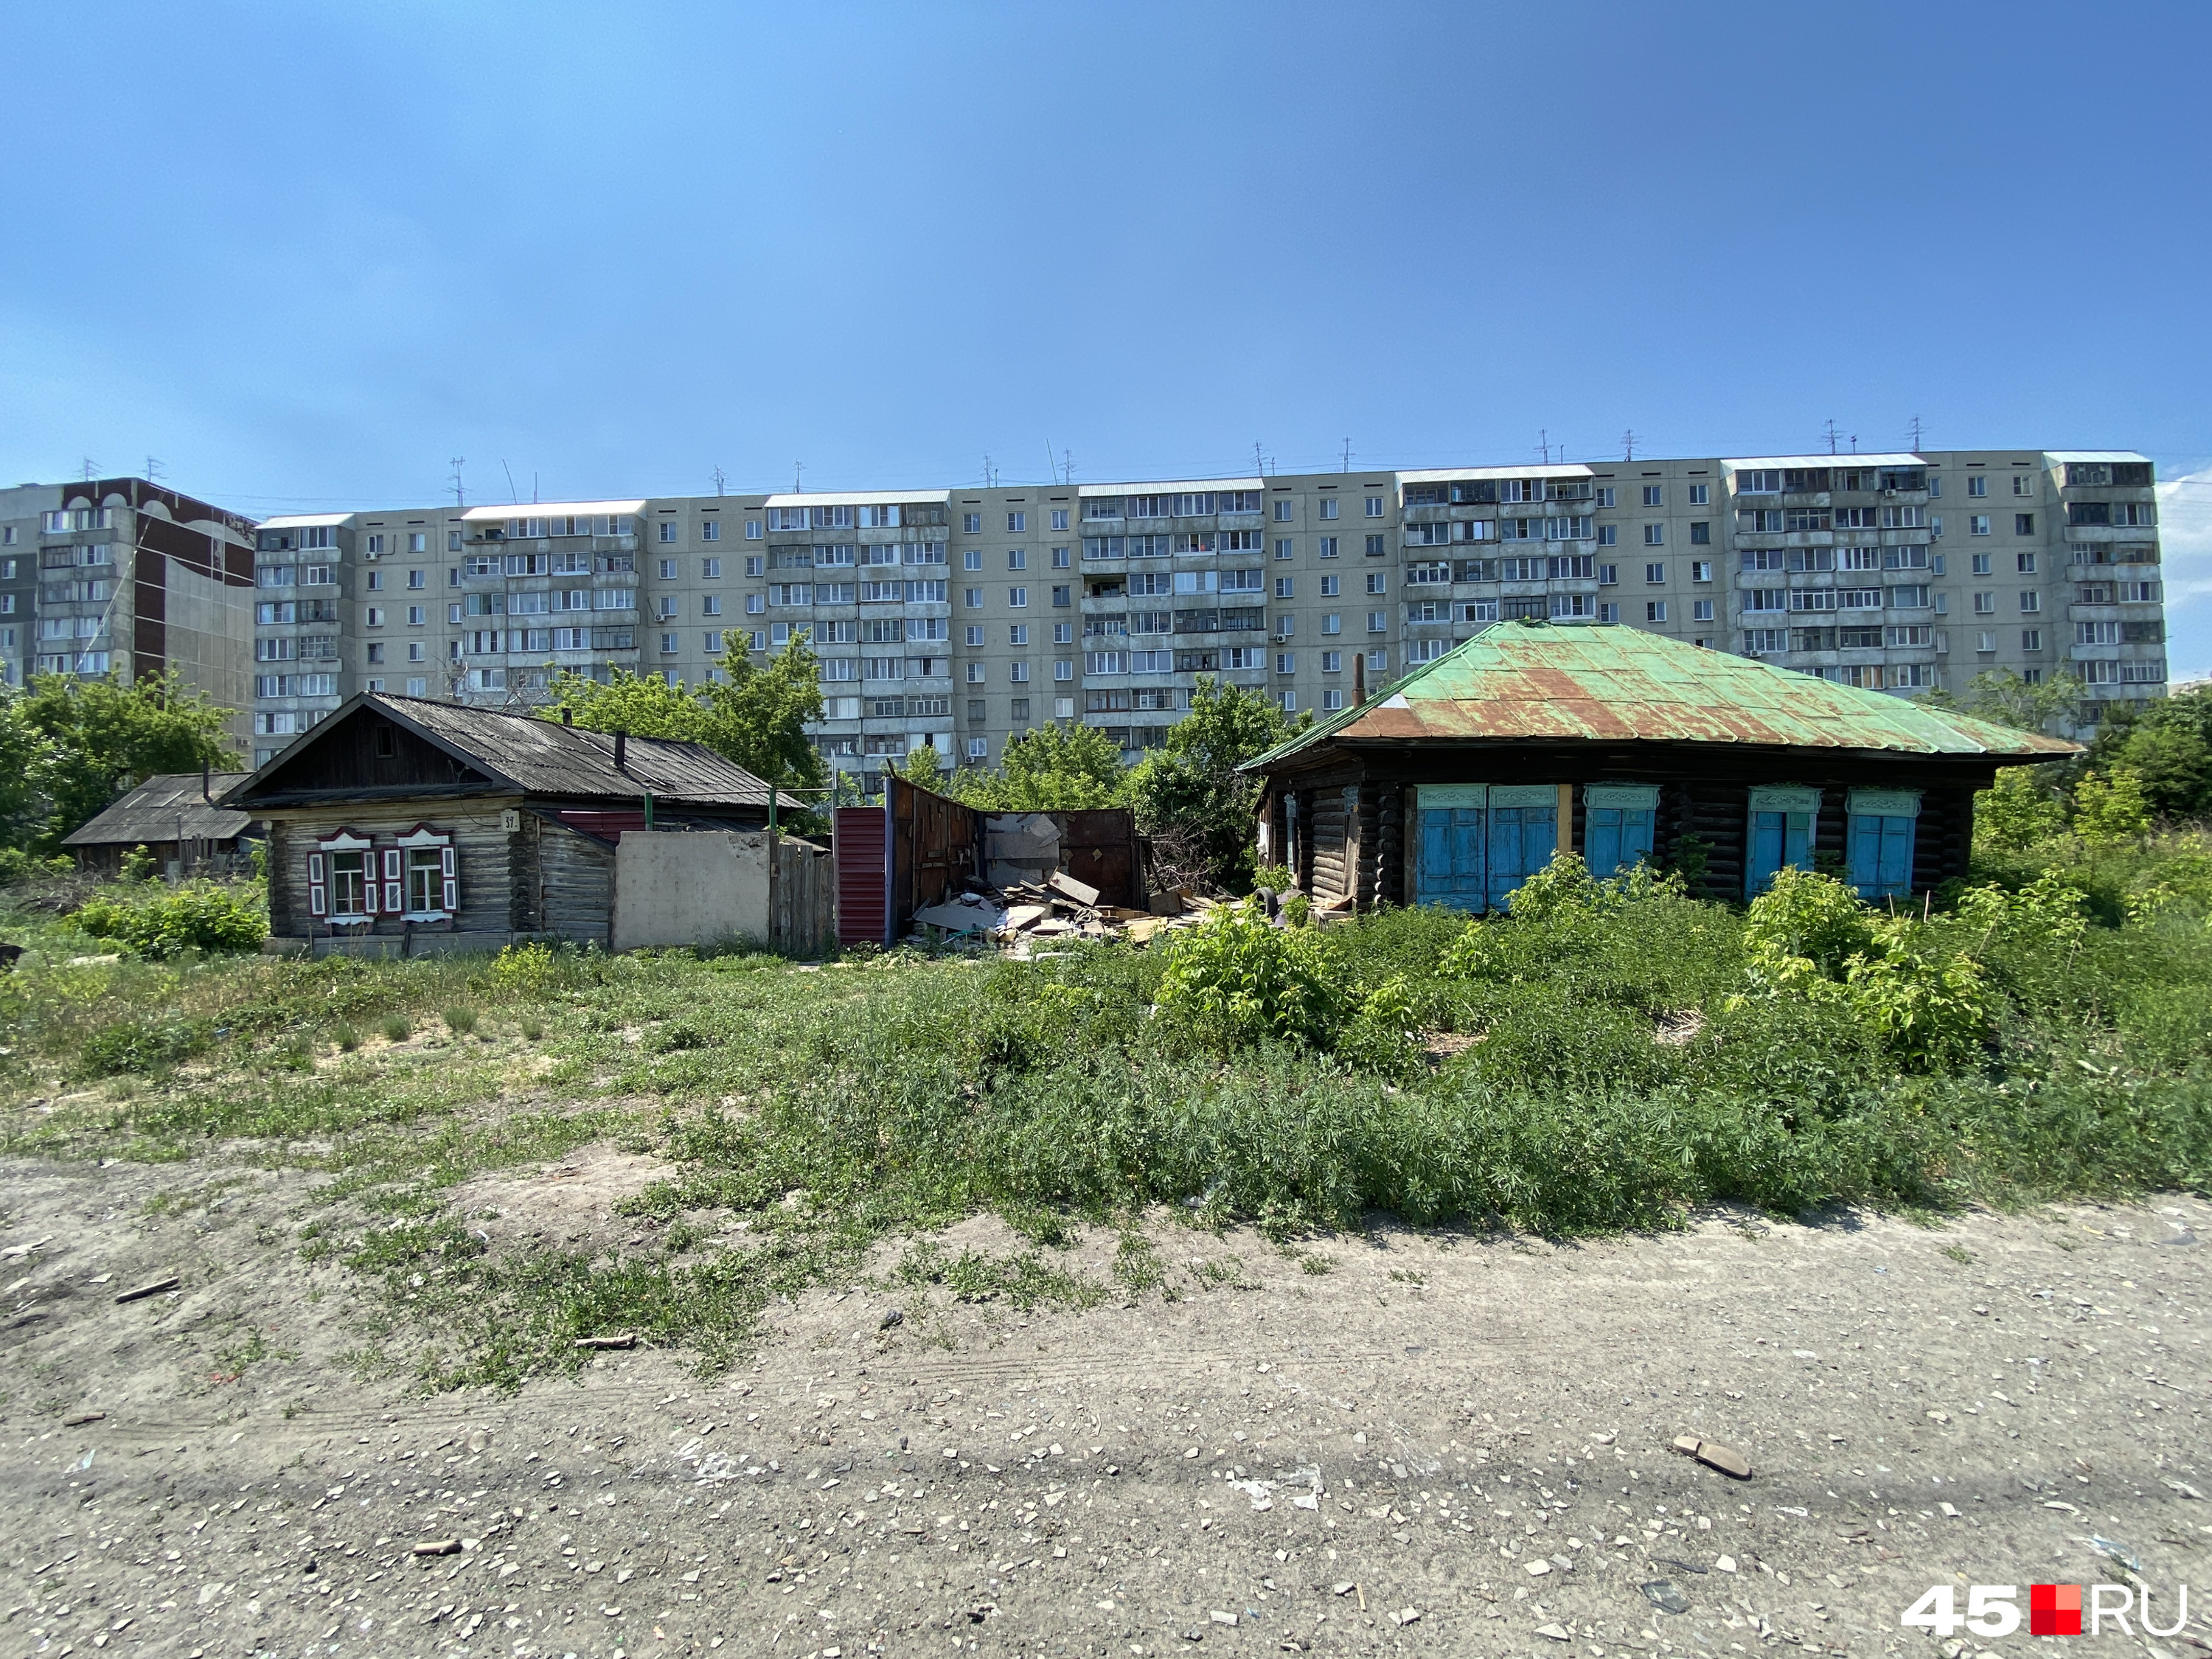 Часть домов на улице Бурова-Петрова, судя по виду, заброшены. Живущие в том районе курганцы предполагают, что их владельцев устроили предложения администрации и они оставили жилье